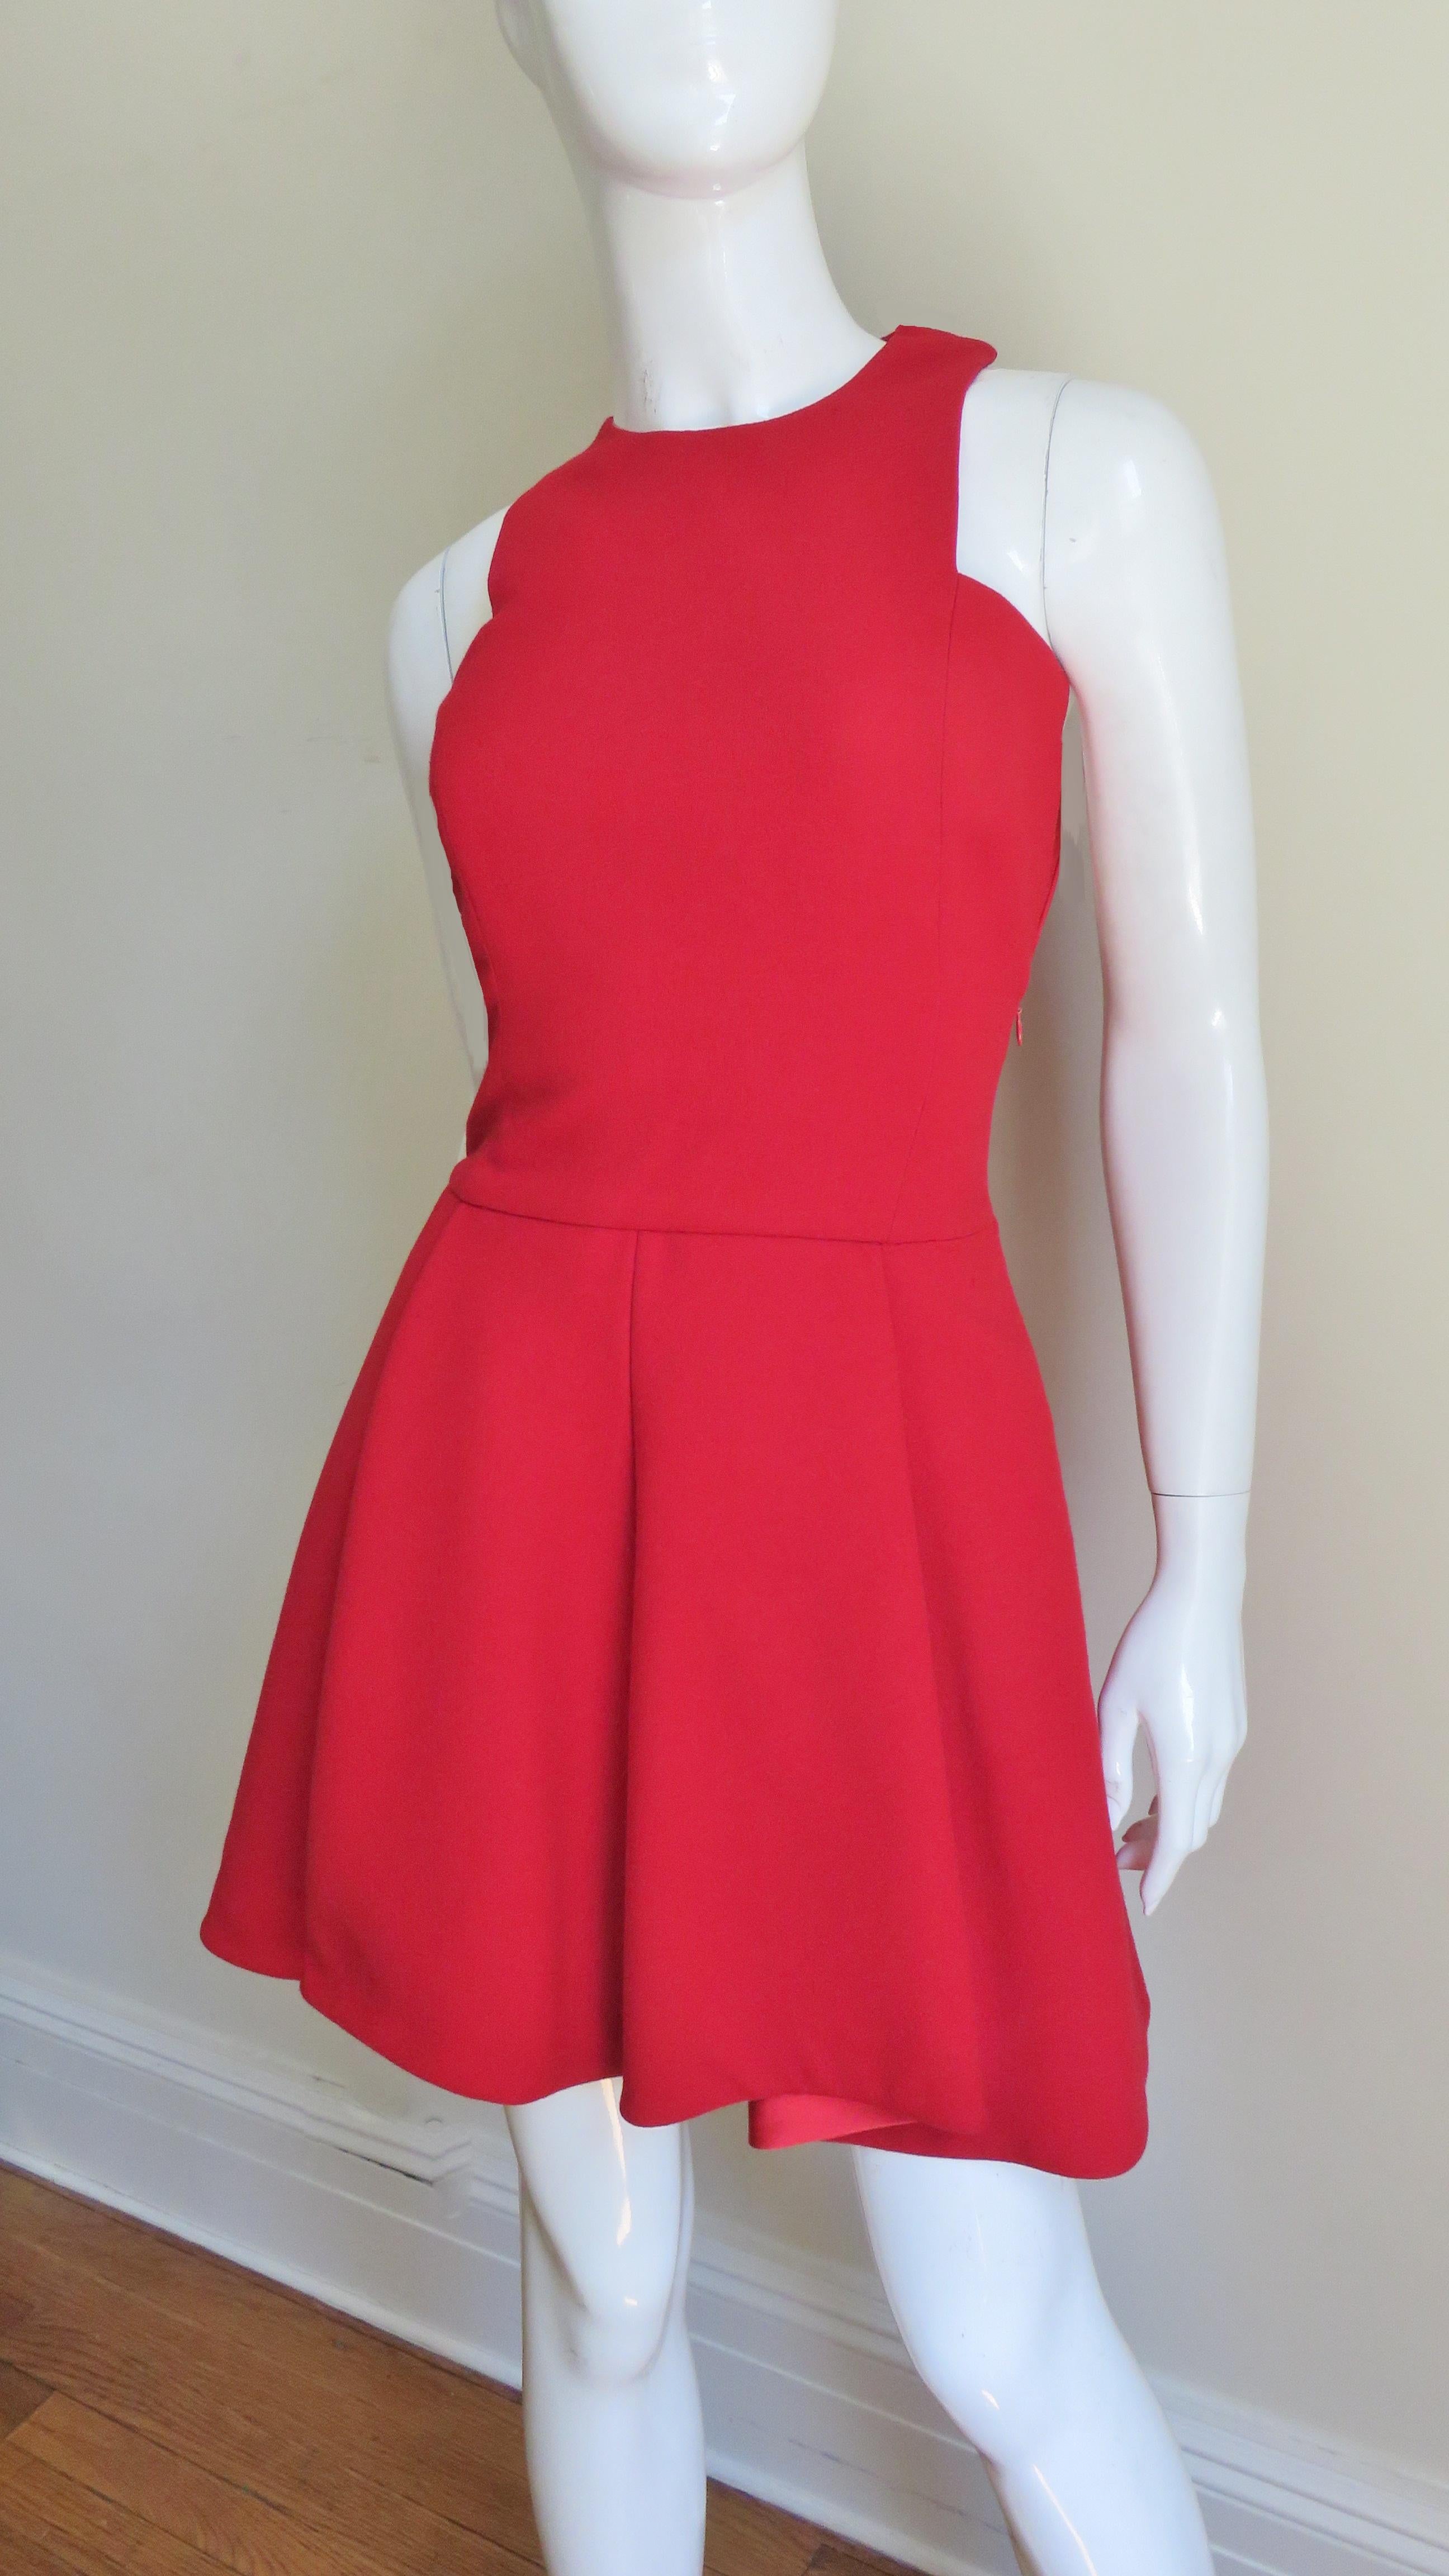 Une superbe robe en laine rouge de Gianni Versace. Il a de belles lignes avec des emmanchures à coupe carrée, un corsage ajusté et une fabuleuse jupe évasée. L'arrière de la robe est magnifique, la jupe étant plus longue et plus ample de quelques